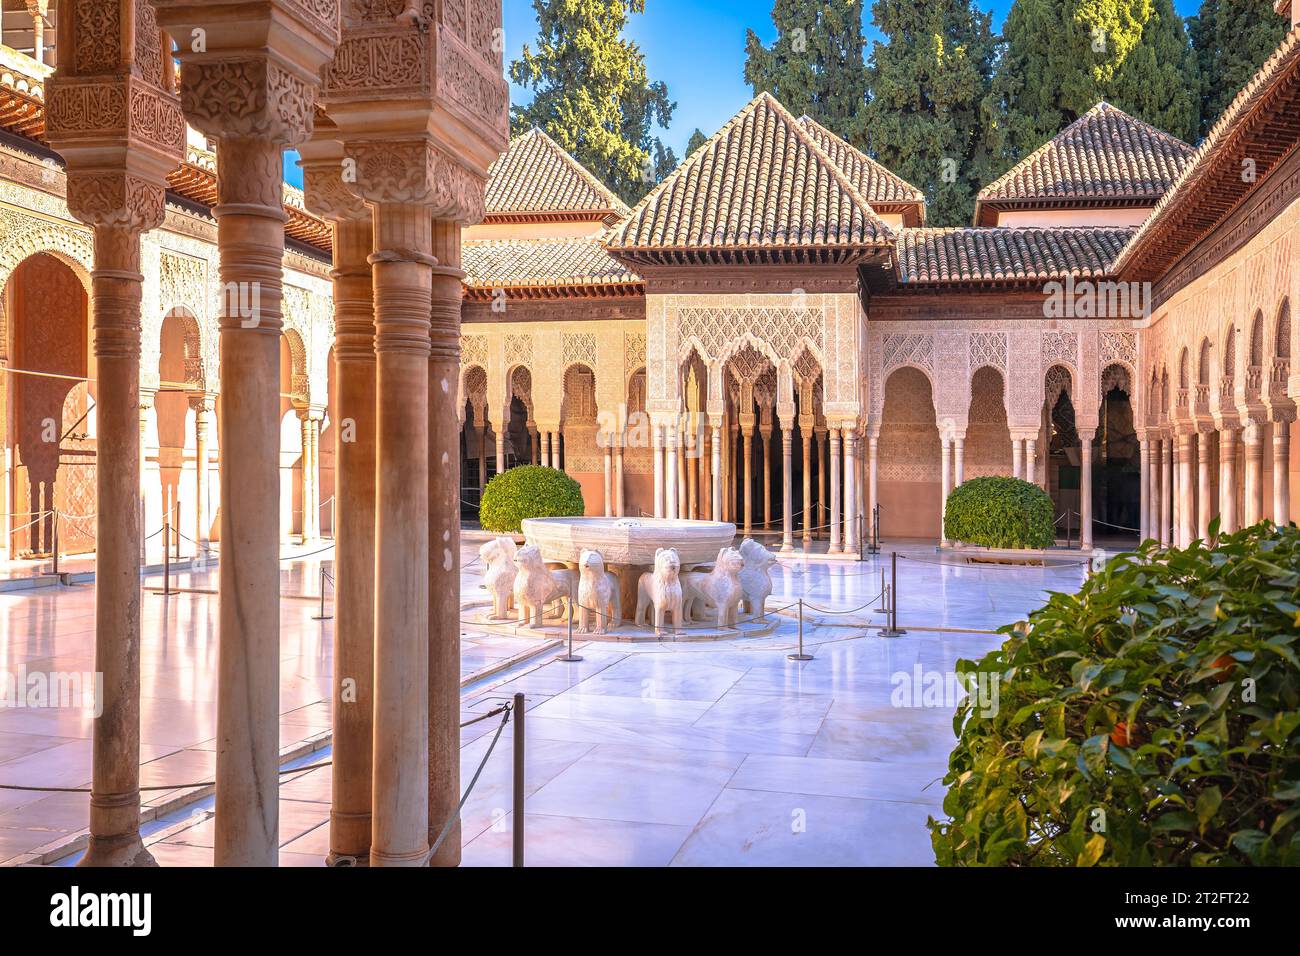 L'architettura islamica dell'Alhambra, Granada, nella regione spagnola dell'Andalusia Foto Stock